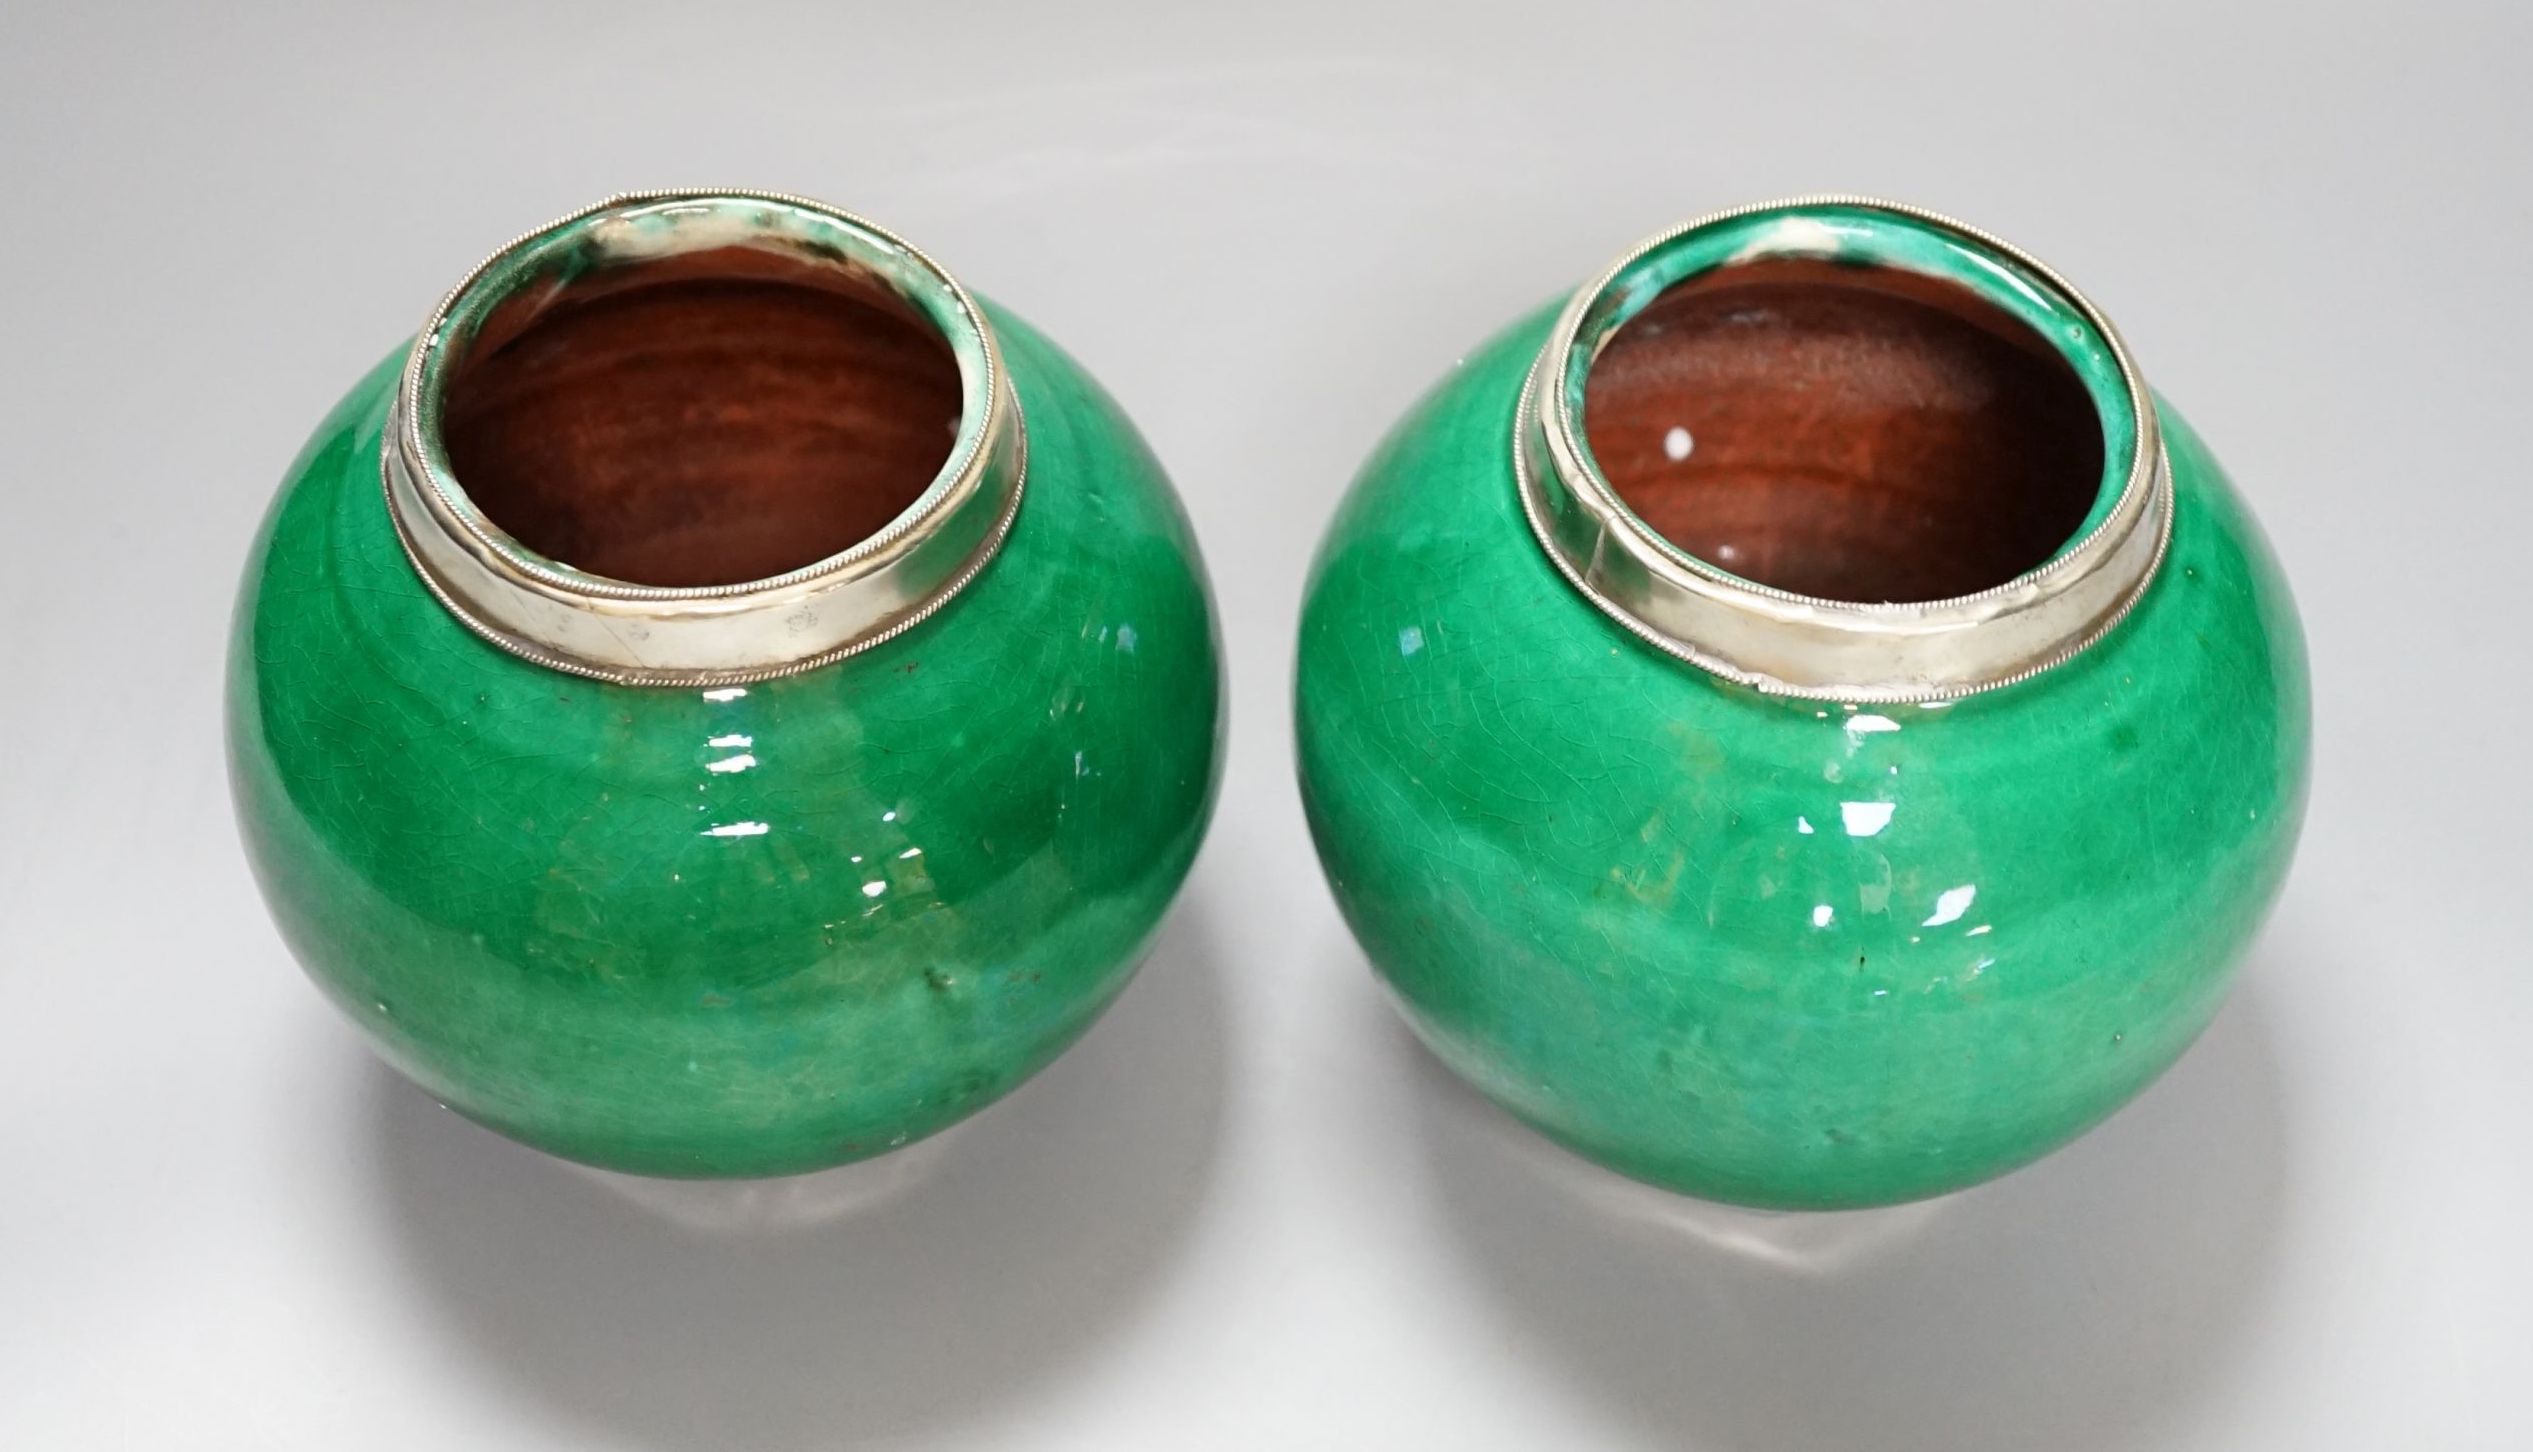 A pair of Tibetan green glazed vases - 14cm high